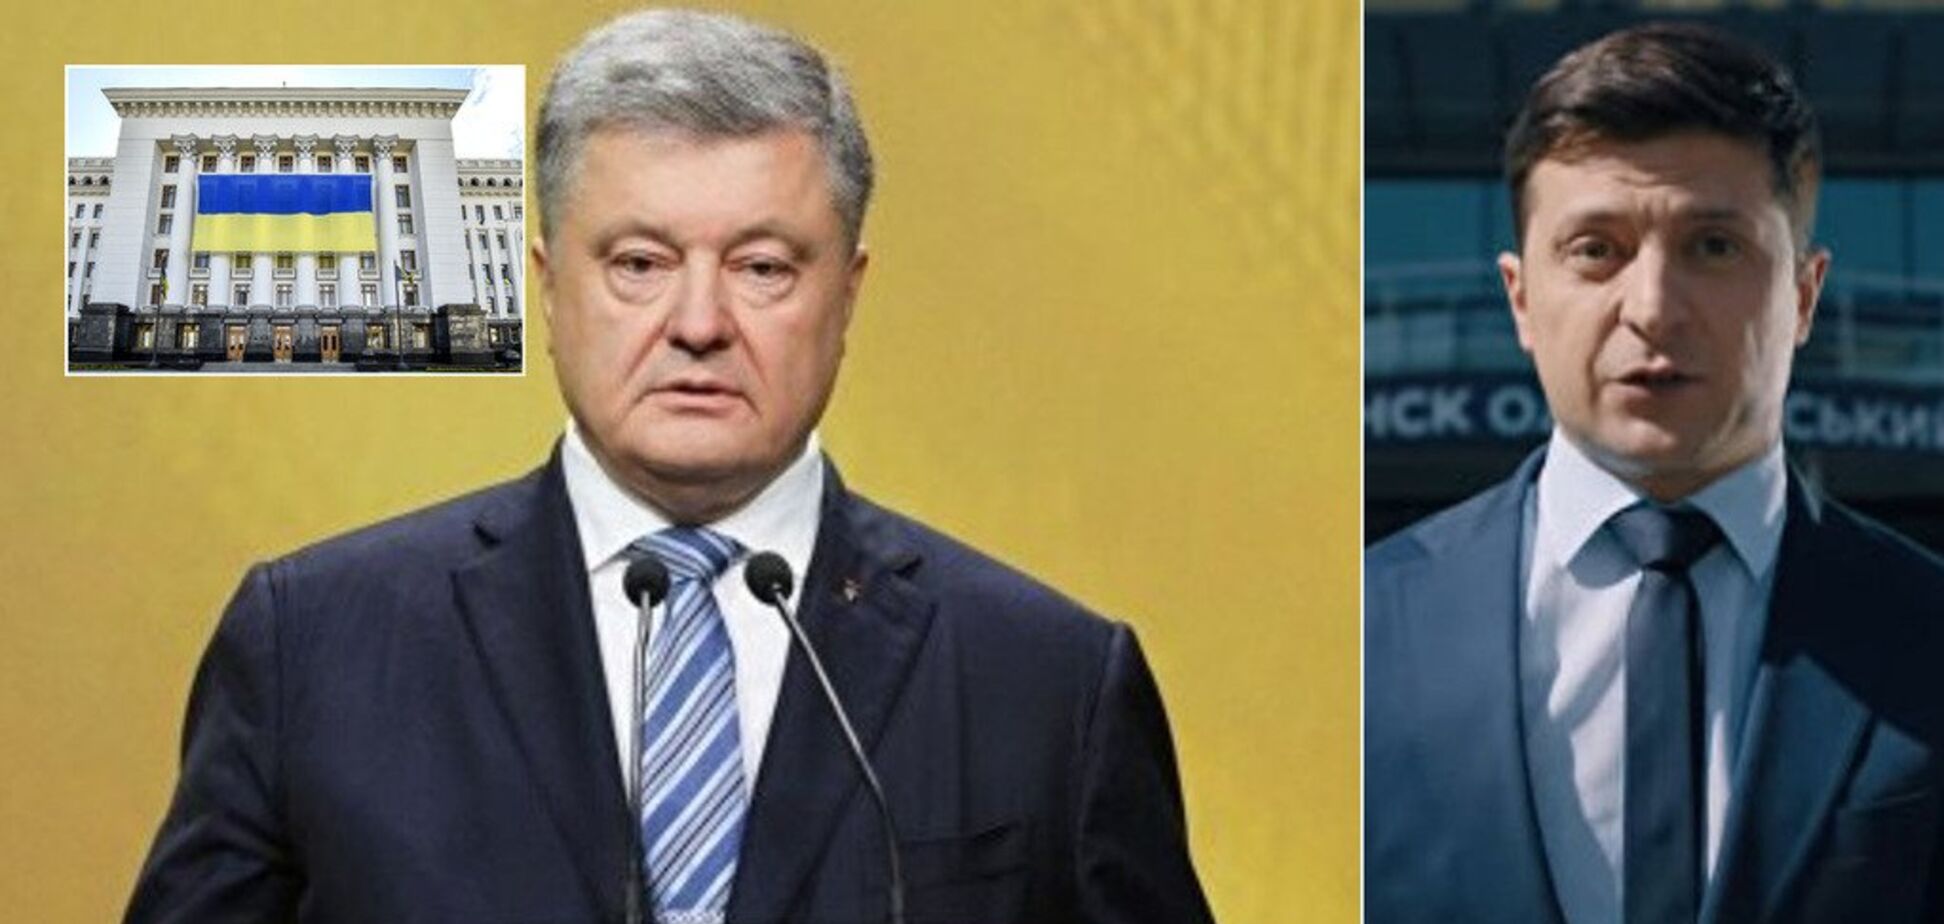 Зеленский против Порошенко: кто вырвет победу во втором туре. Данные закрытых соцопросов